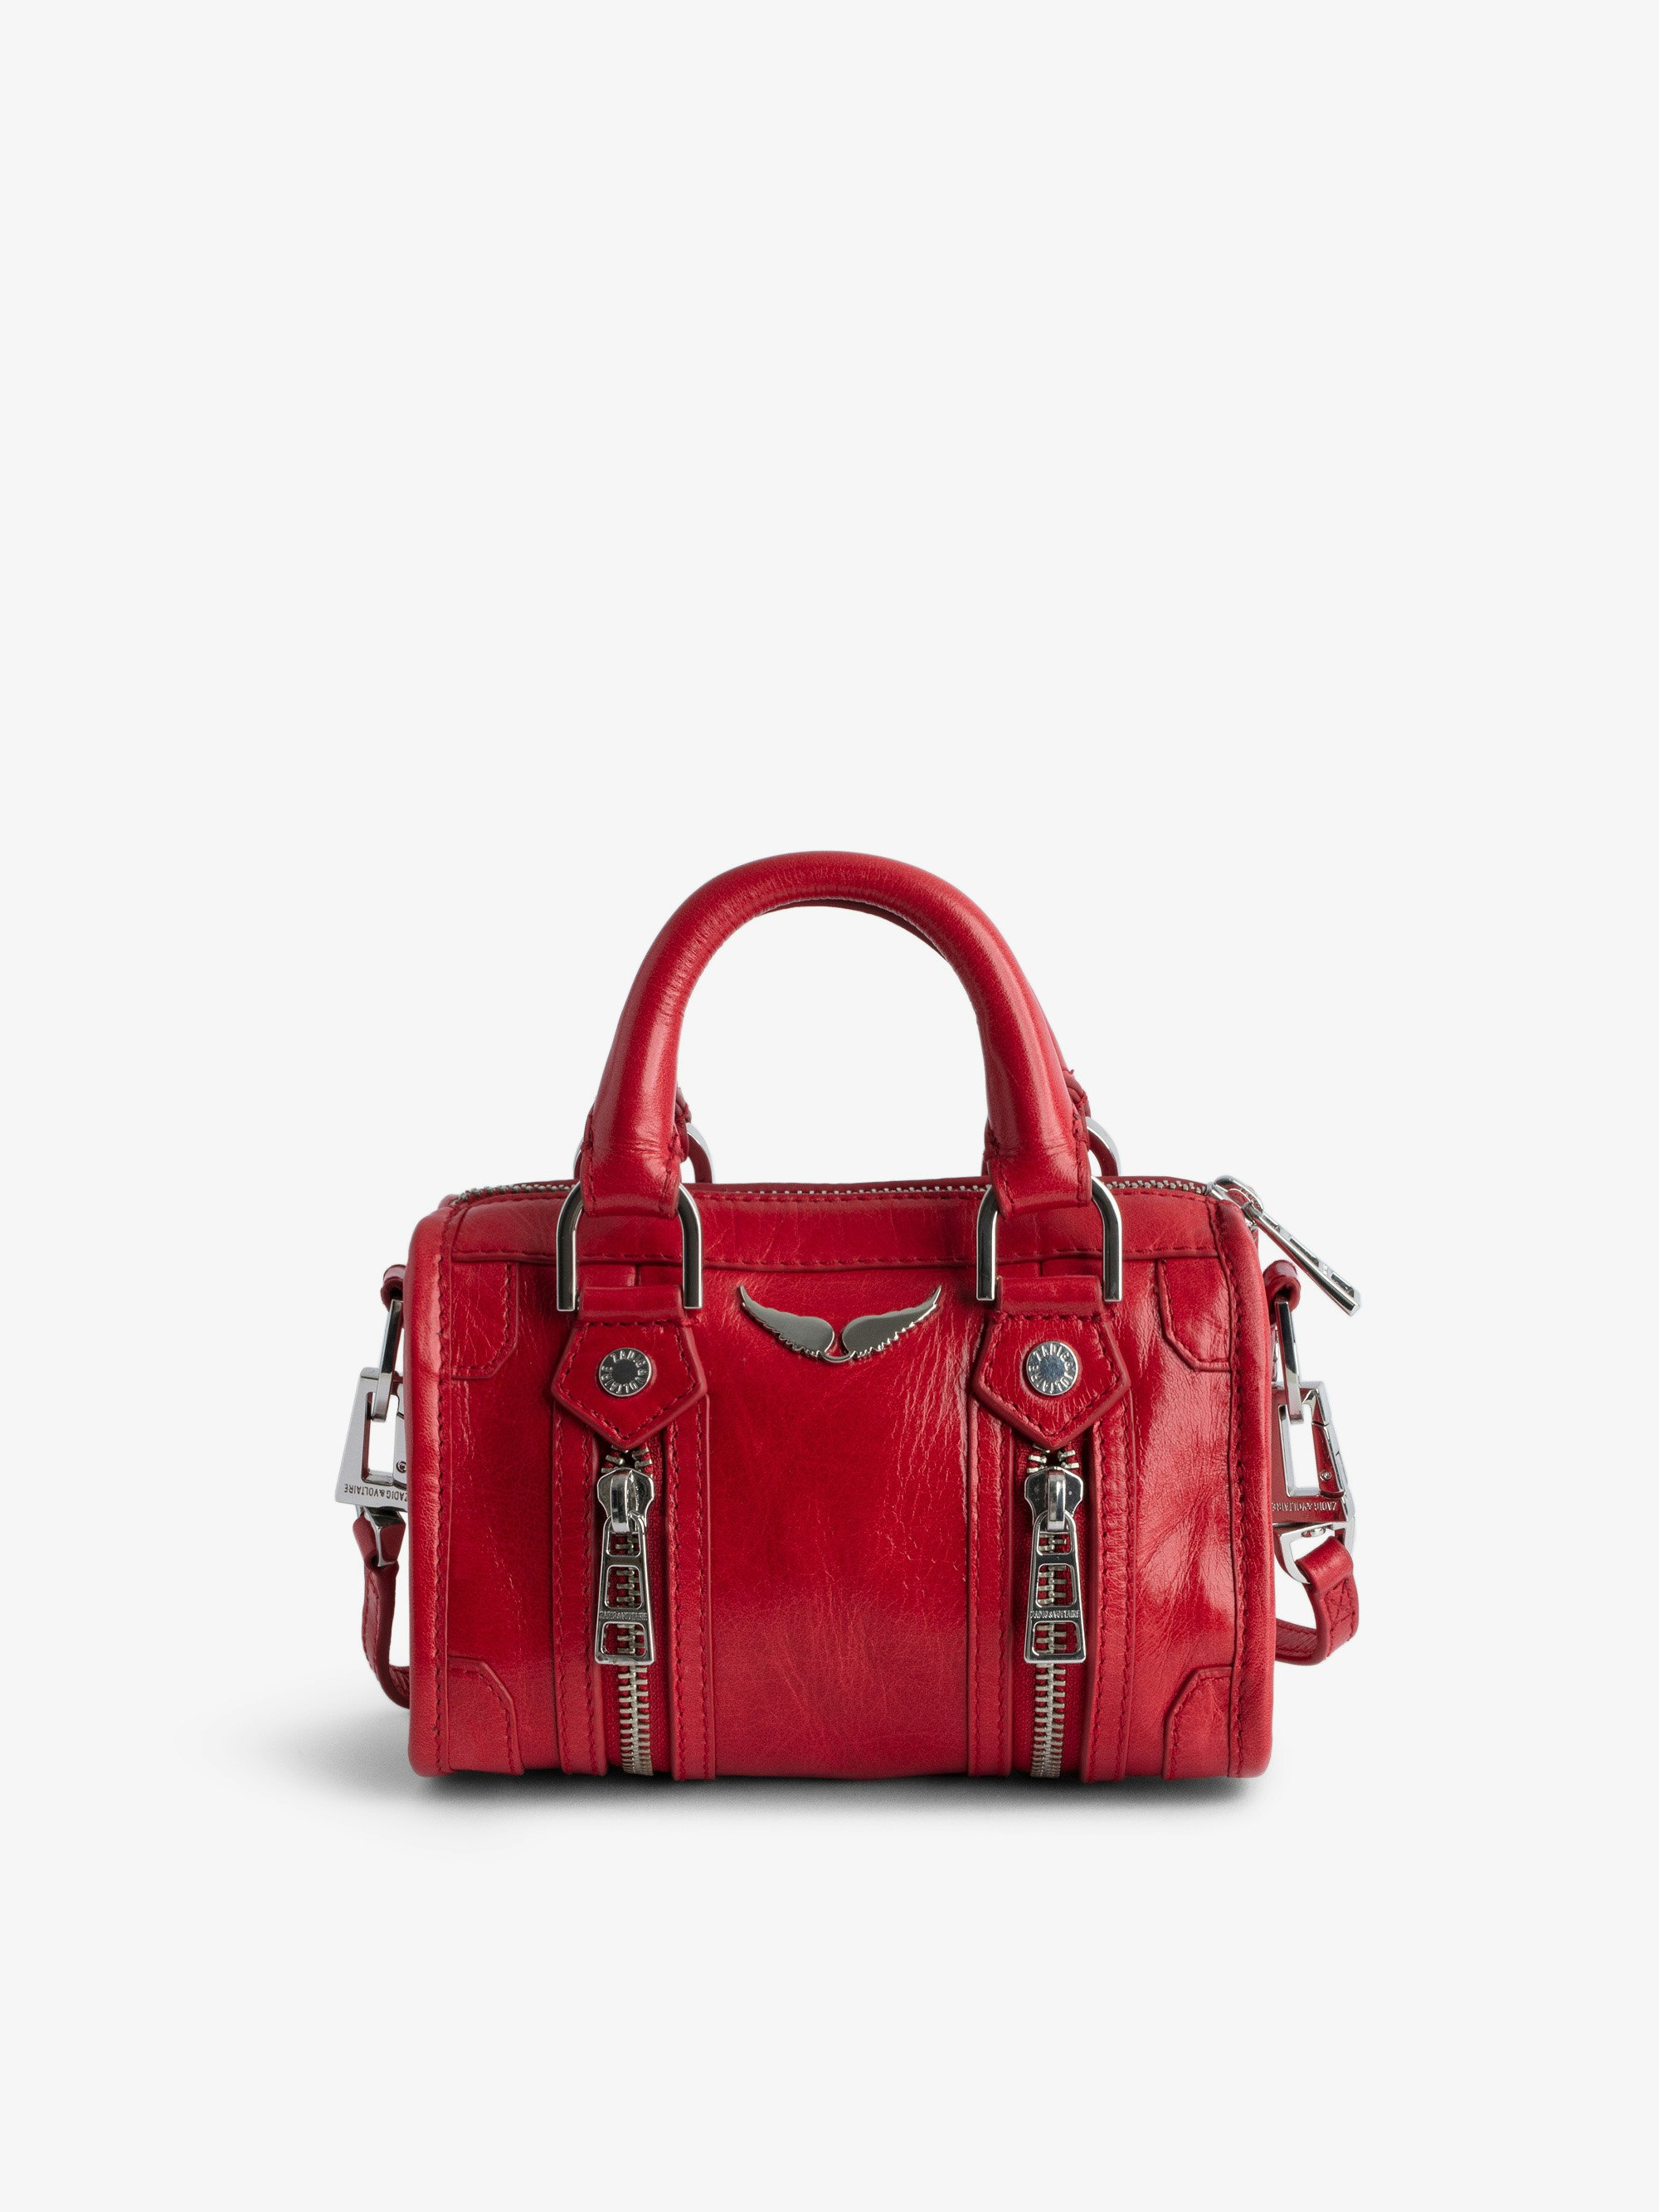 Sac Sunny Nano #2 - Petit sac en cuir vernis effet vintage rouge à anses courtes et bandoulière.